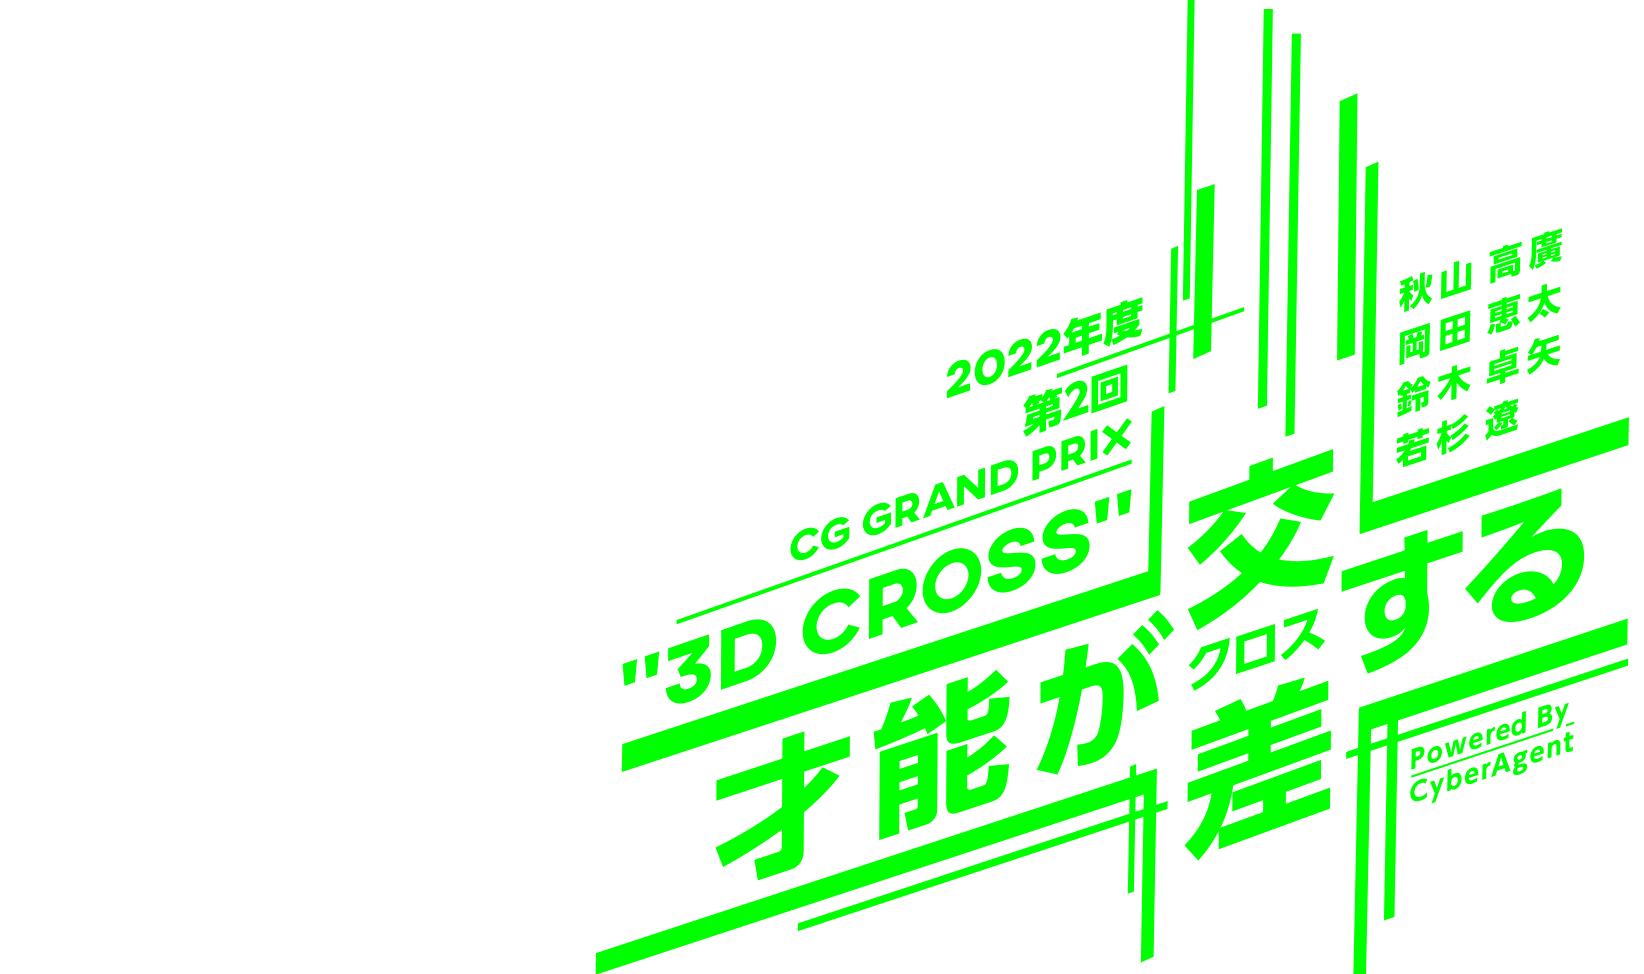 CG Grand Prix “3D Cross“ powerd by CyberAgent